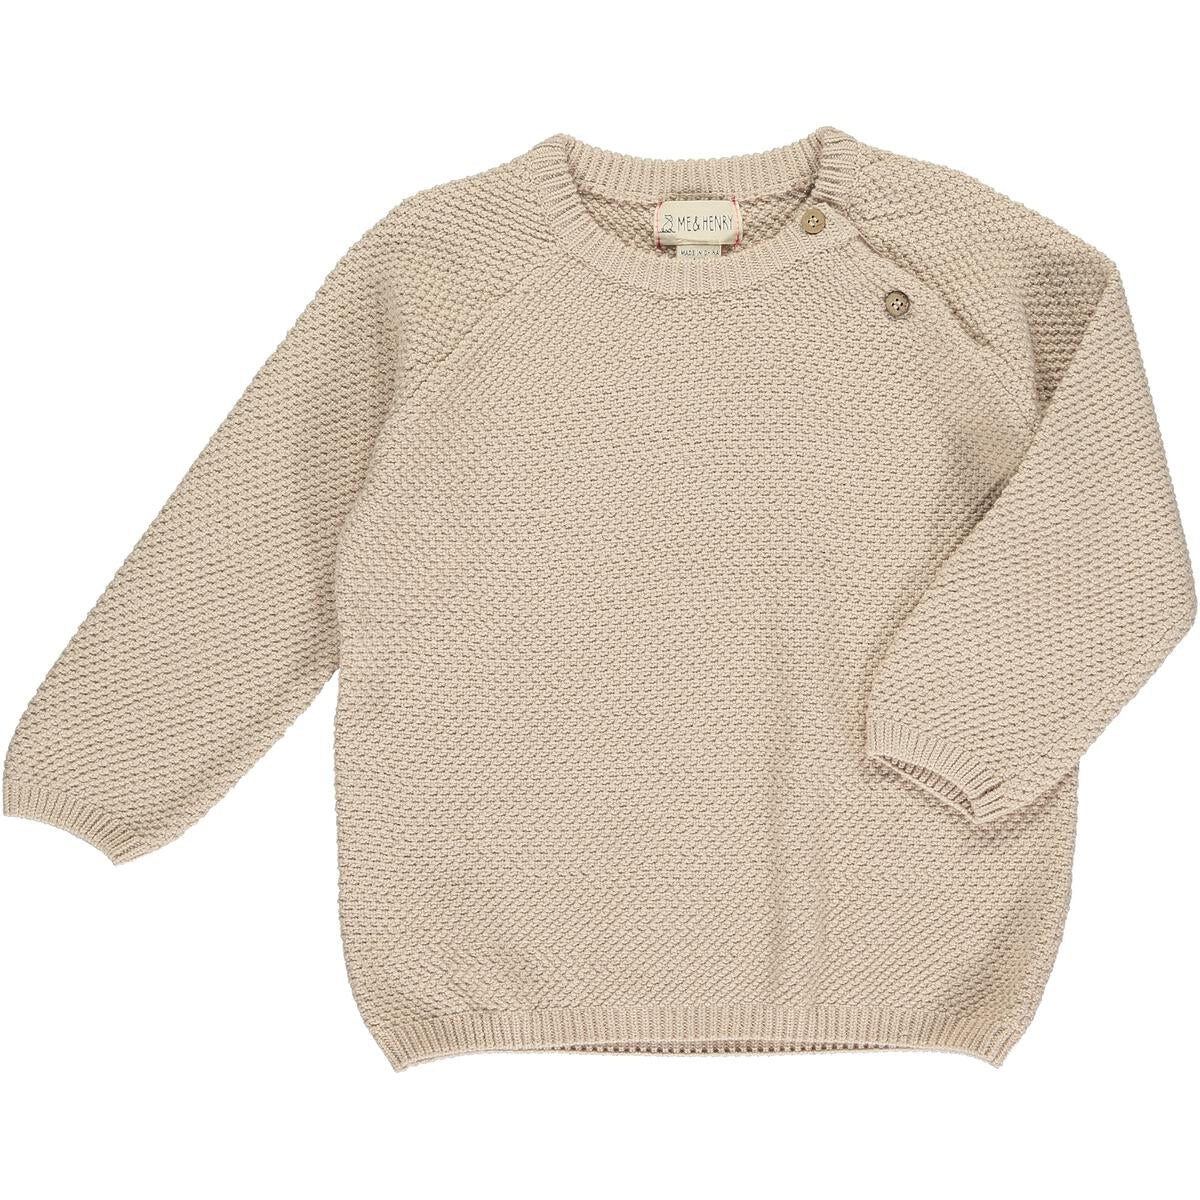 Boy's Roan Sweater in Tan